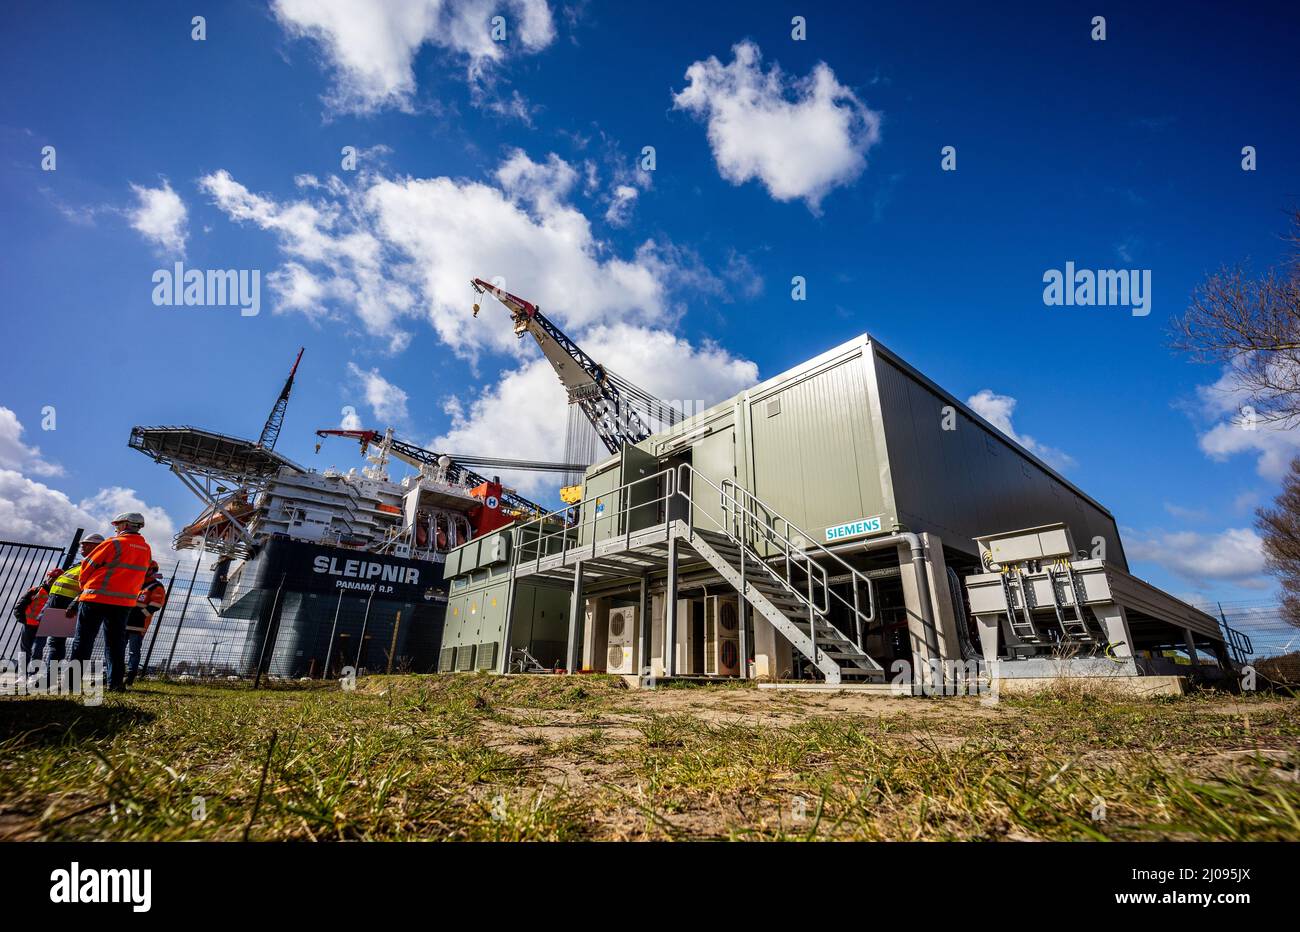 ROTTERDAM - Een walstroominstallatie met een vermogen van 20 Megawatt op de Landtong Rozenburg. Via de installatie kunnen kraanschepen duurzaam opgewekte stroom ontvangen vanuit het naastgelegen windpark van Eneco, zodat draaiende vervuilende dieselgeneratoren voortaan verleden tijd kunnen zijn. ANP JEFFREY GROENEWEG Stock Photo